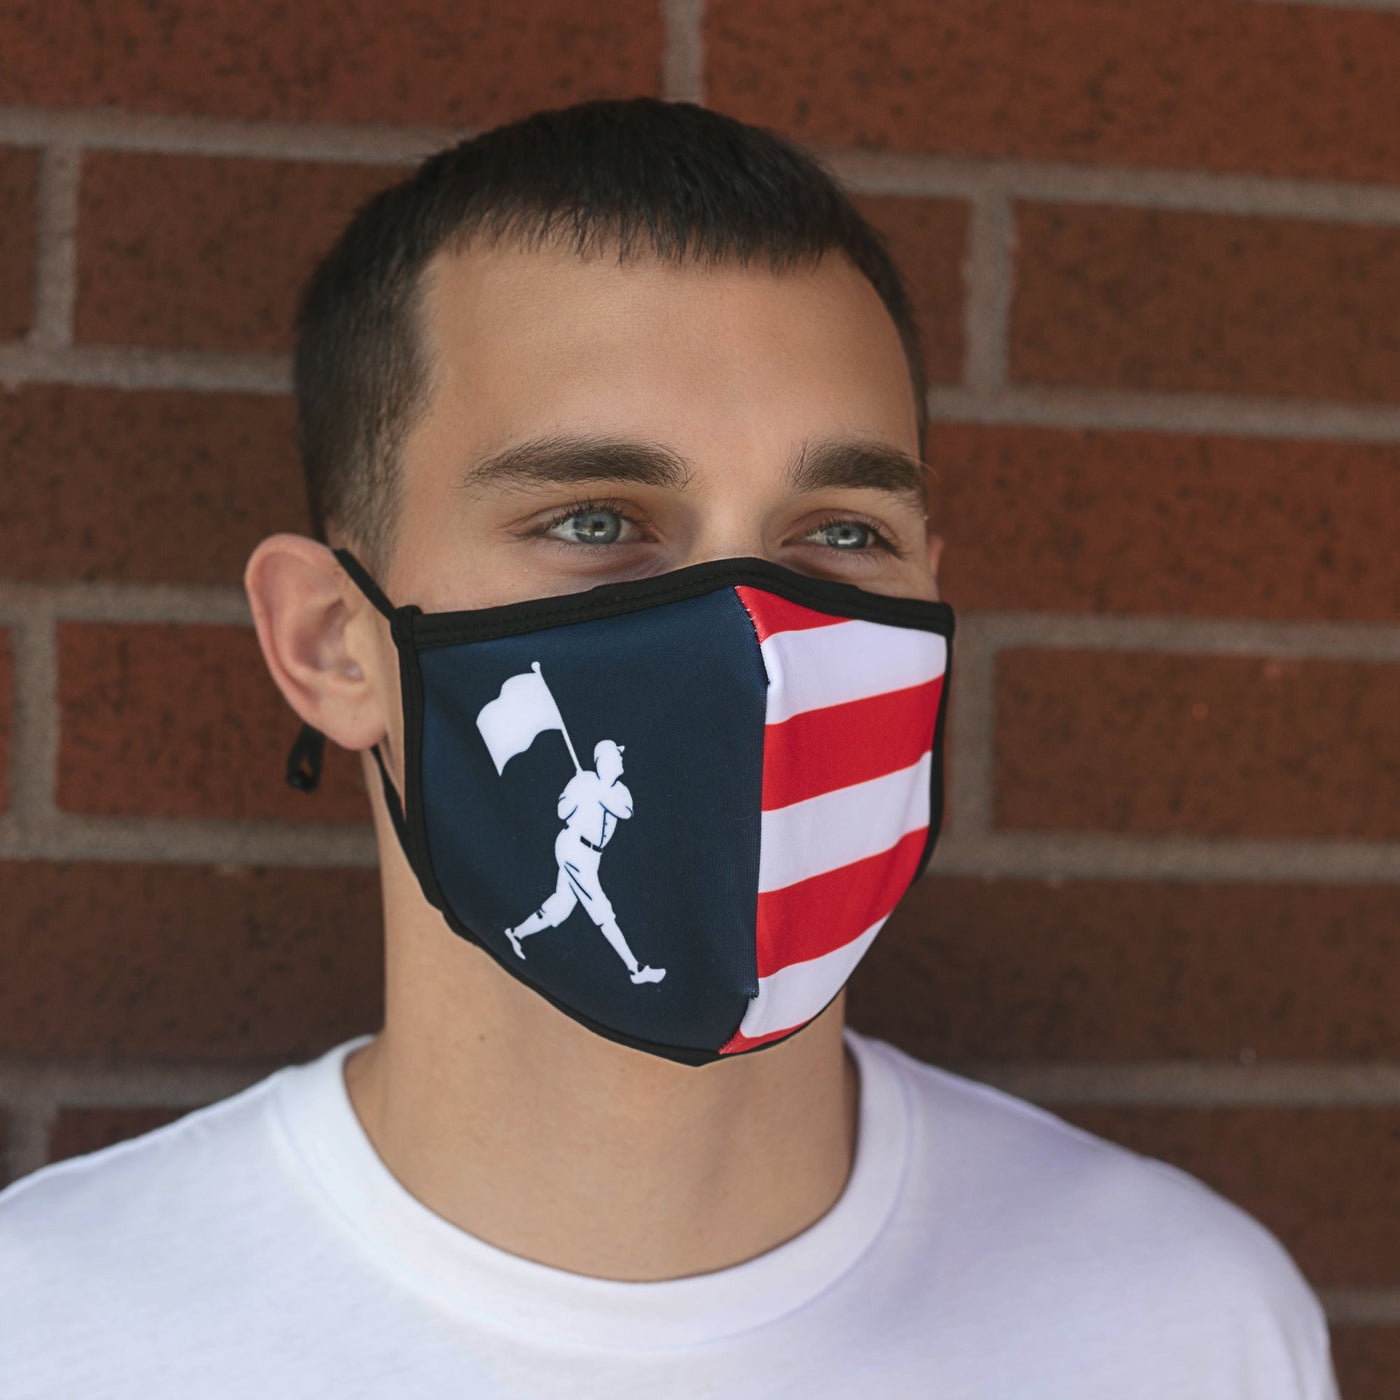 Flag Man Mask 2-Pack - Unisex